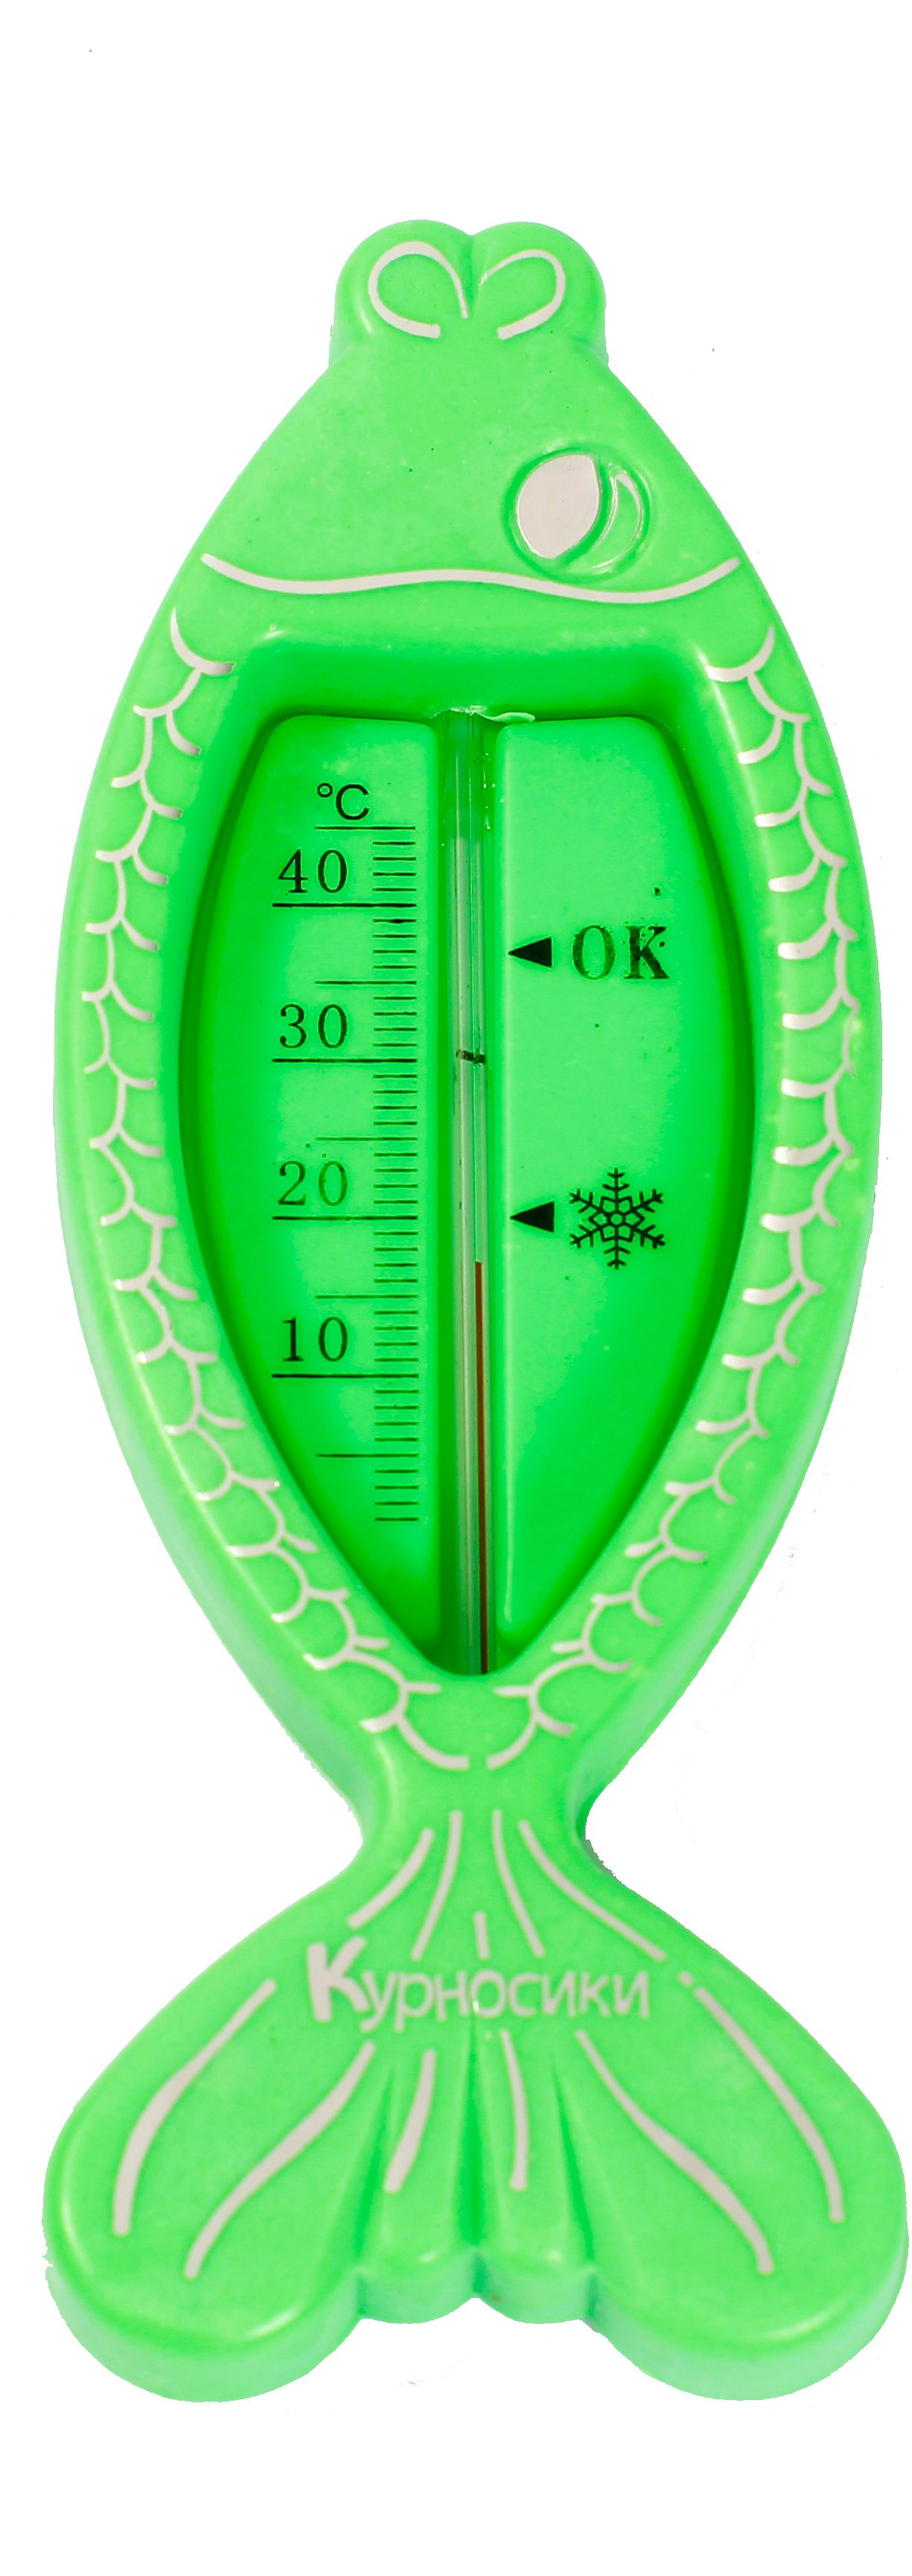 Термометр для води Курносики Рибка, зелений (7086 зел) - фото 1